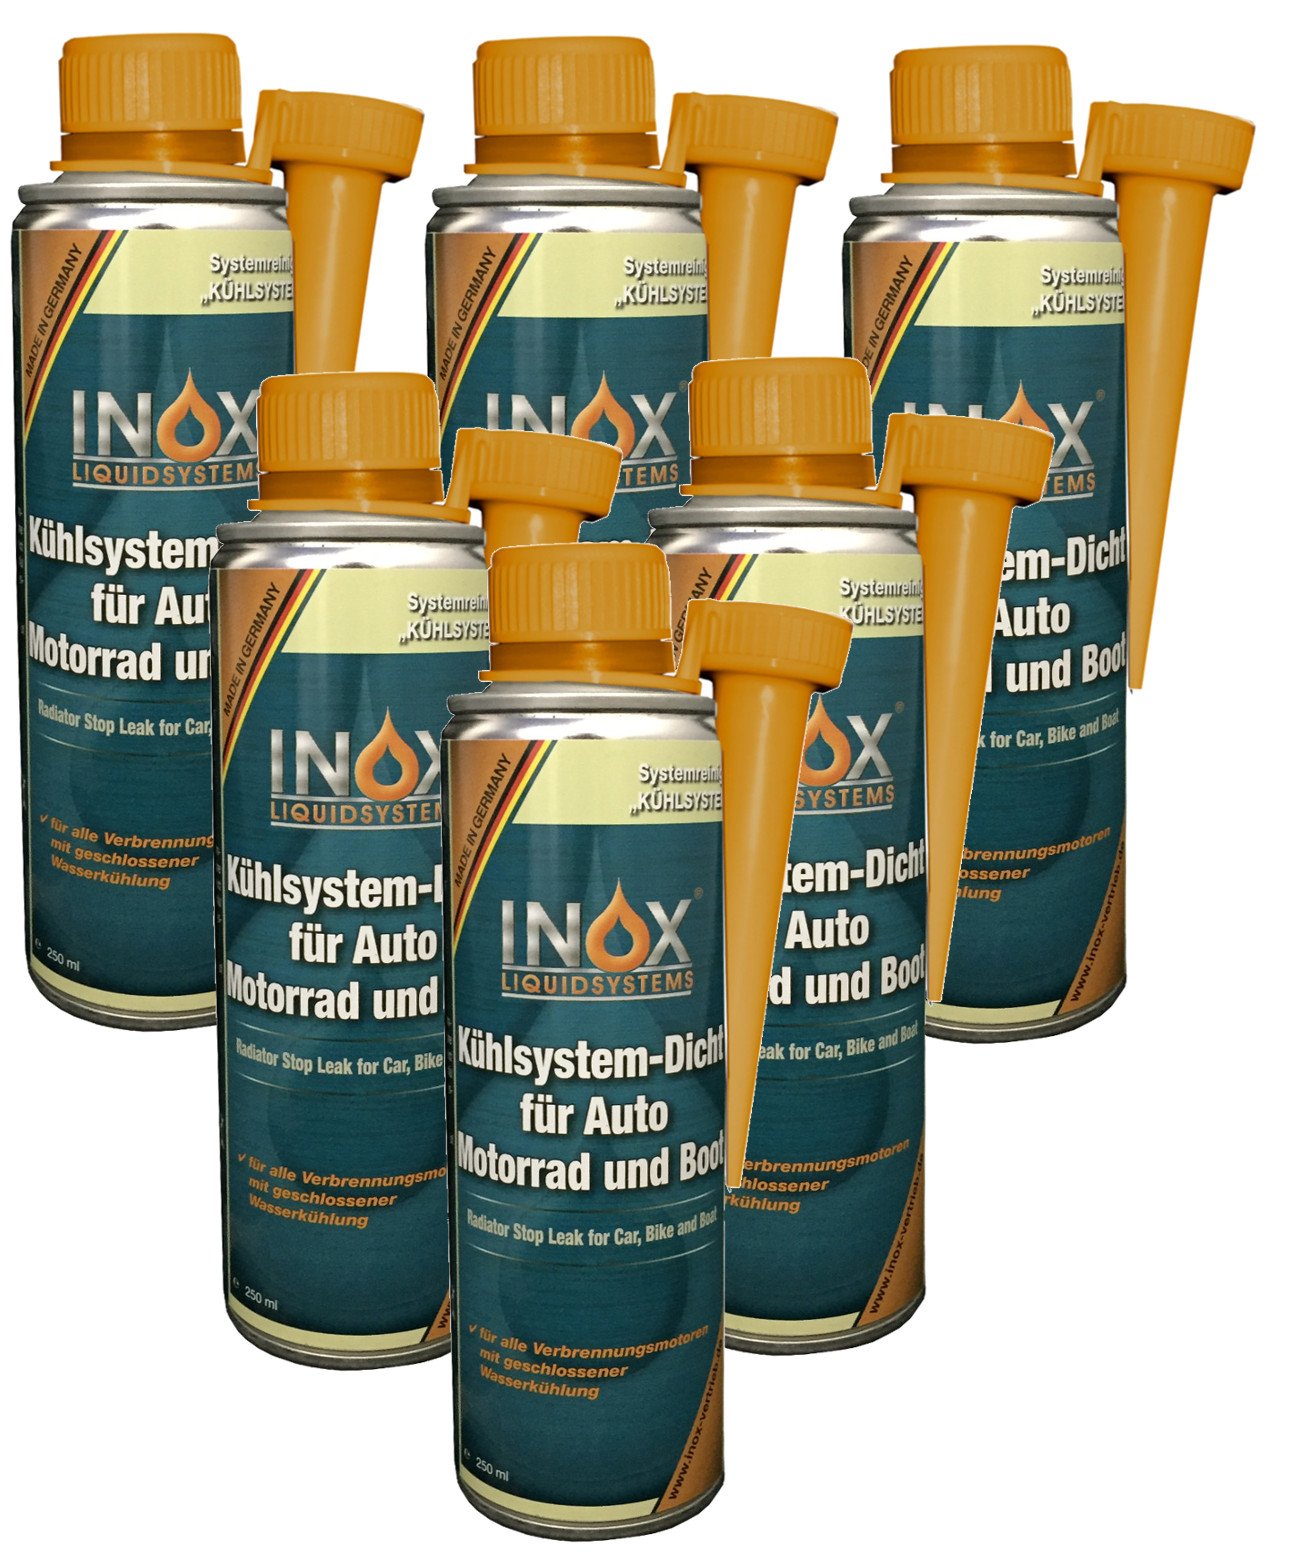 INOX® Kühlsystem Dicht Additiv Kühlsystempflege Aufbereitung, 6 x 250ml - Dichtmittel für Kühlsysteme für alle Verbrennungsmotoren mit Wasserkühlung geeignet von INOX-LIQUIDSYSTEMS